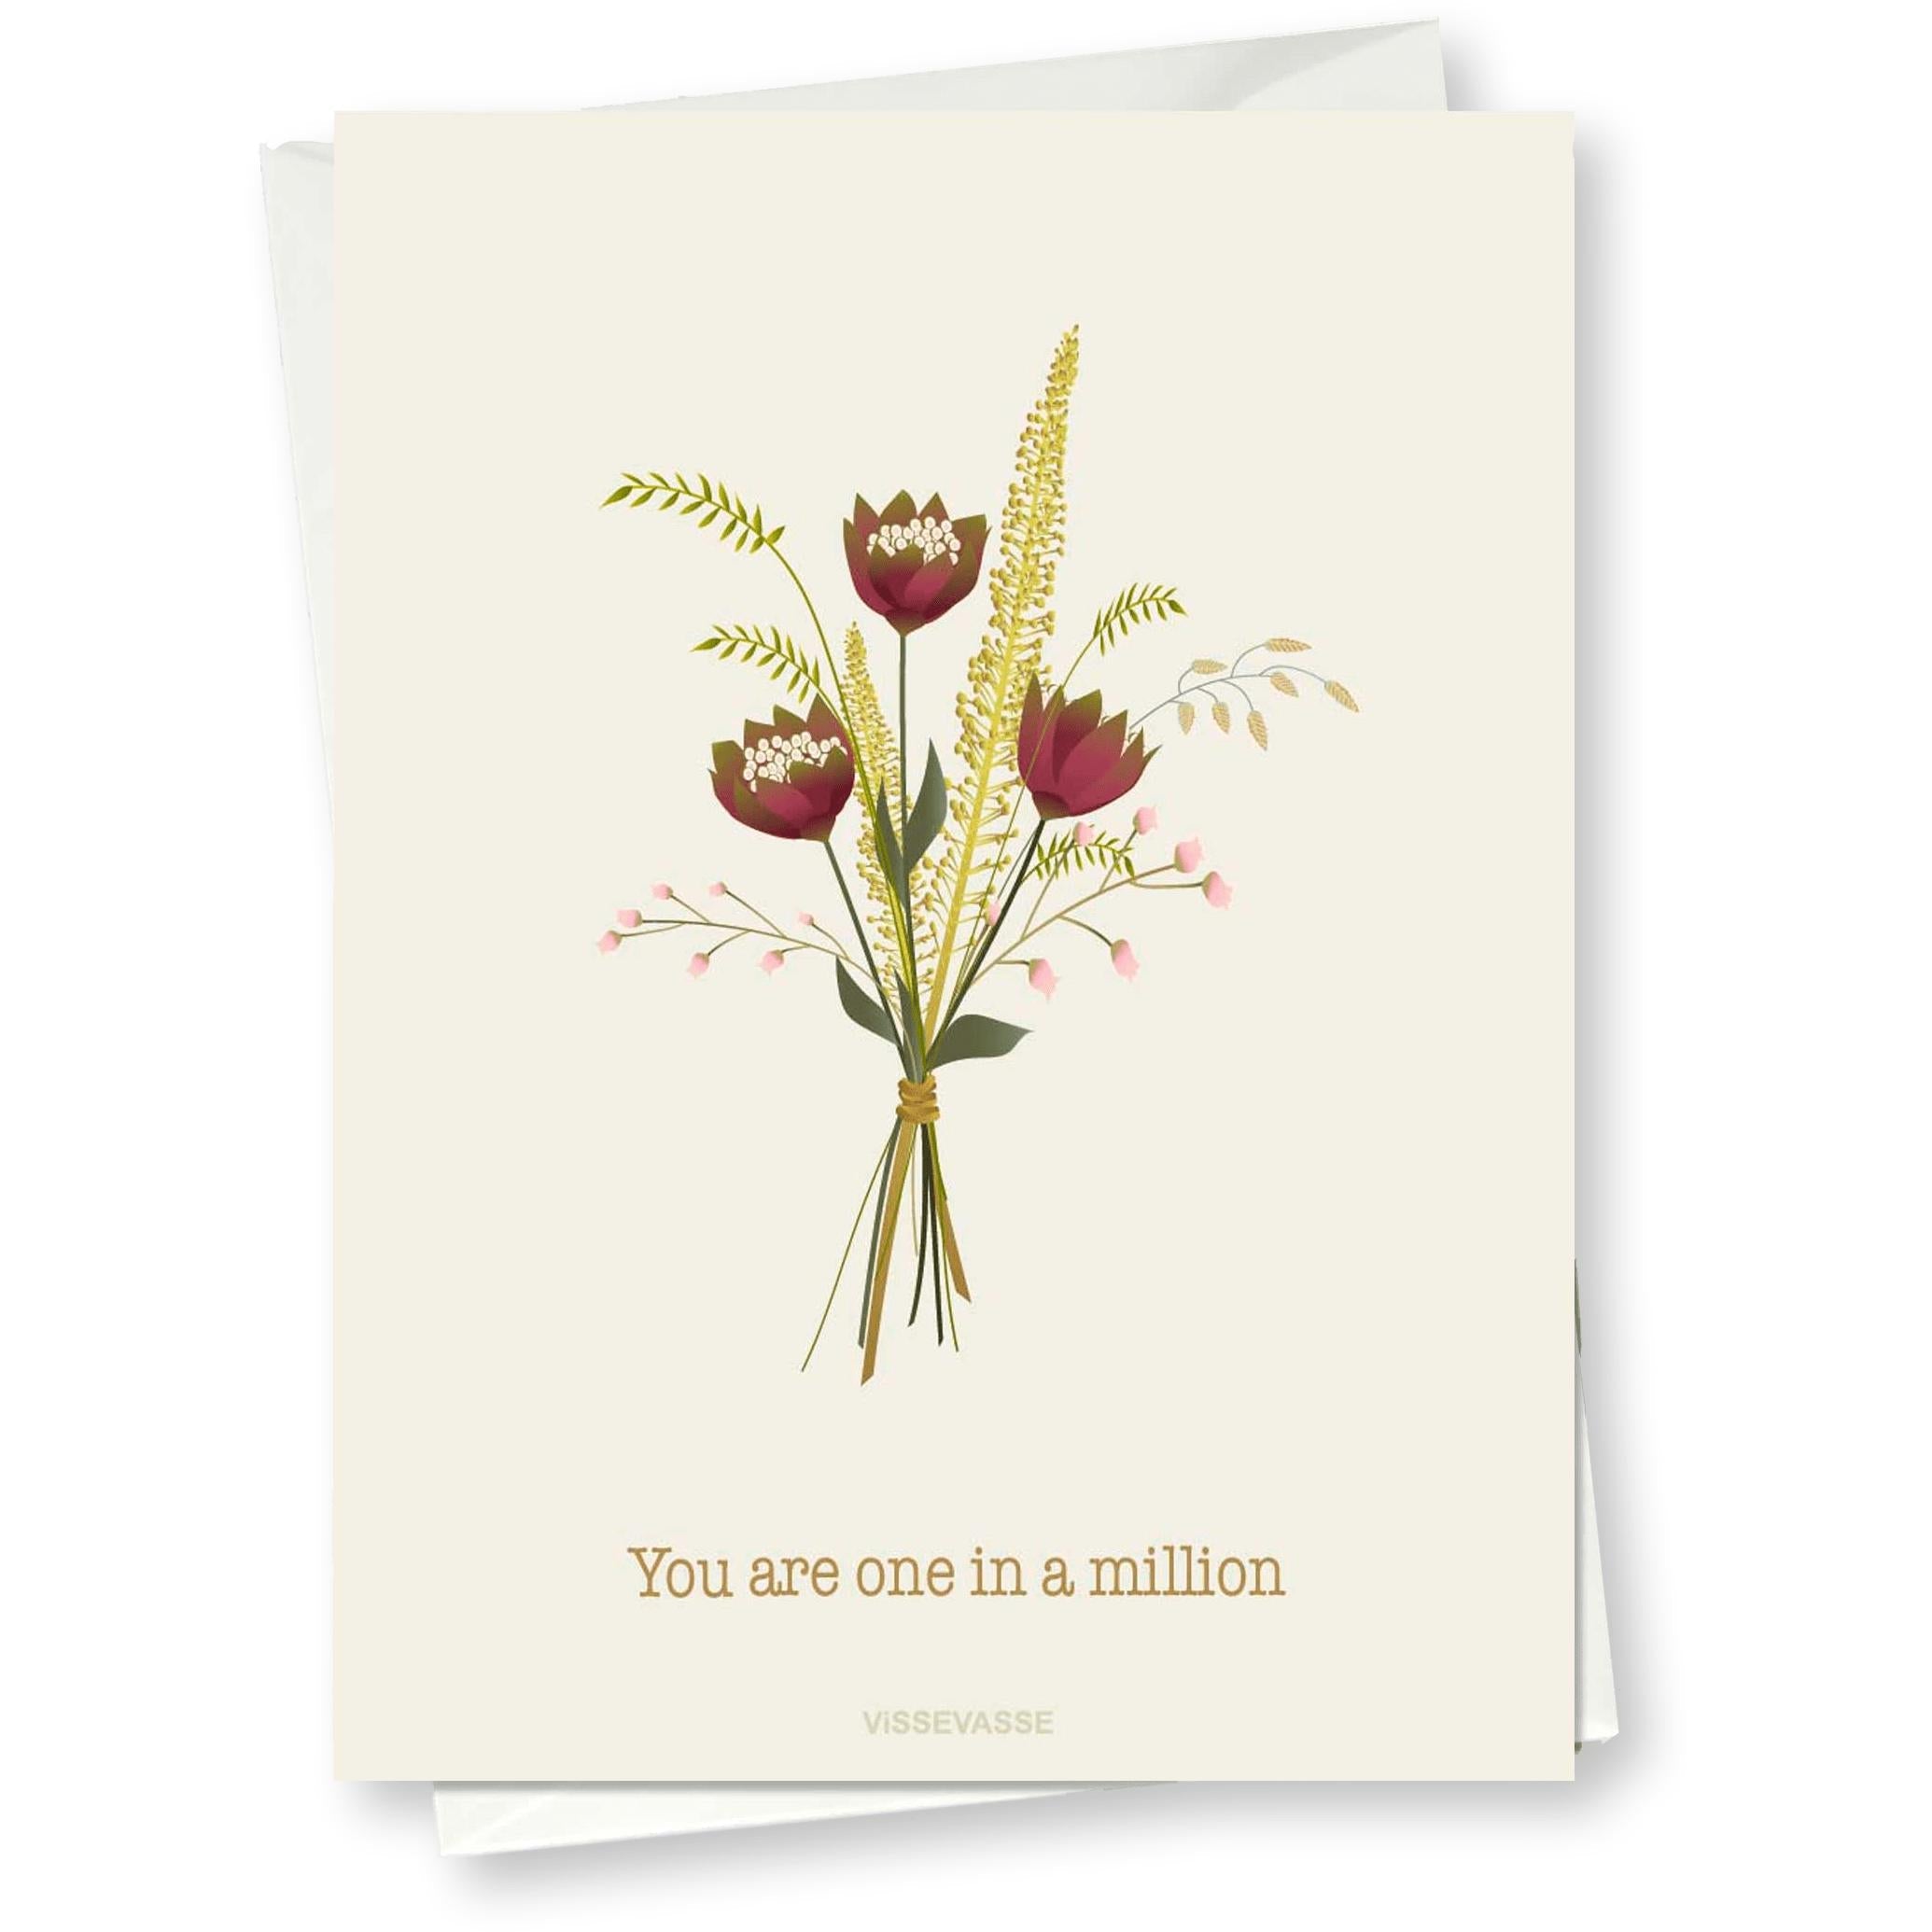 Vissevasse eres una tarjeta de felicitación una en un millón, 10x15cm